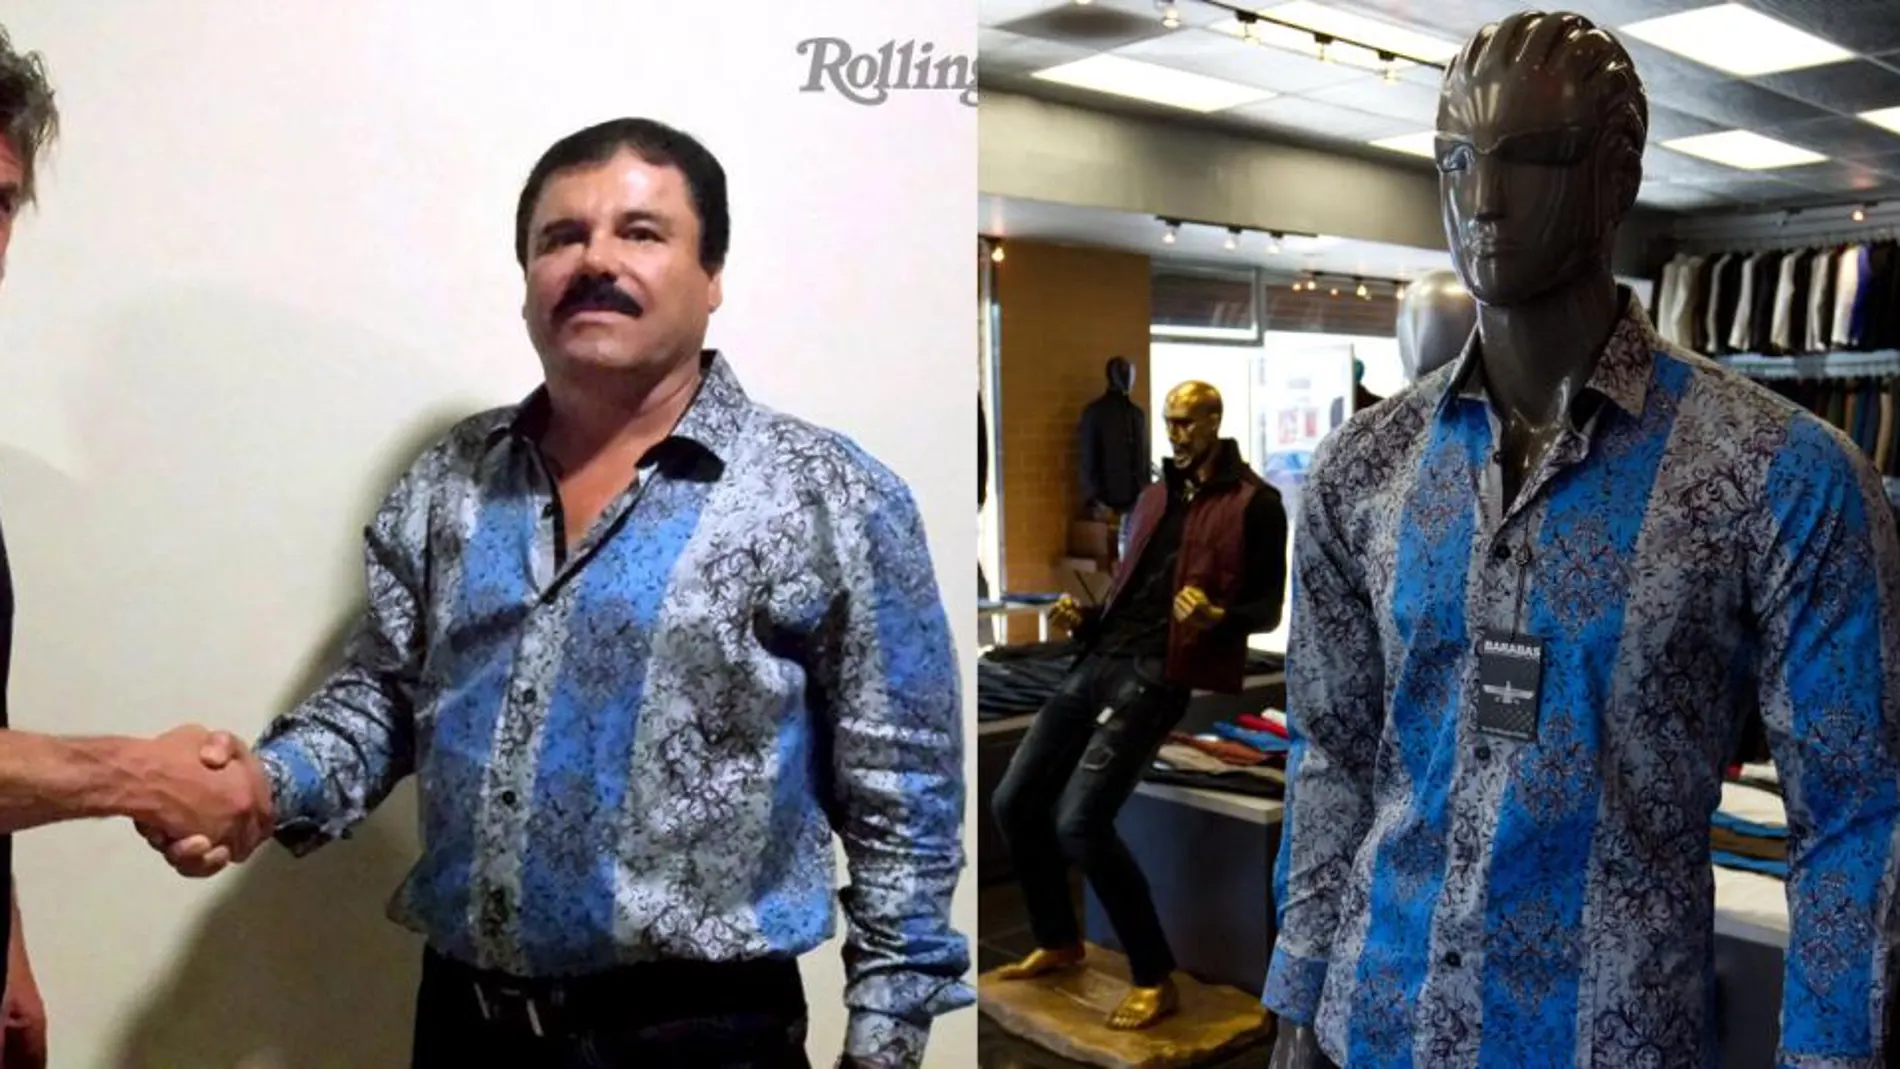 Imagen publicada por la revista Rolling Stone, de Joaquín Guzmán Loera, alias "El Chapo", en la entrevista que realizó el actor Sean Penn, al lado un maniquí vestido con una camisa igual a la que vestía